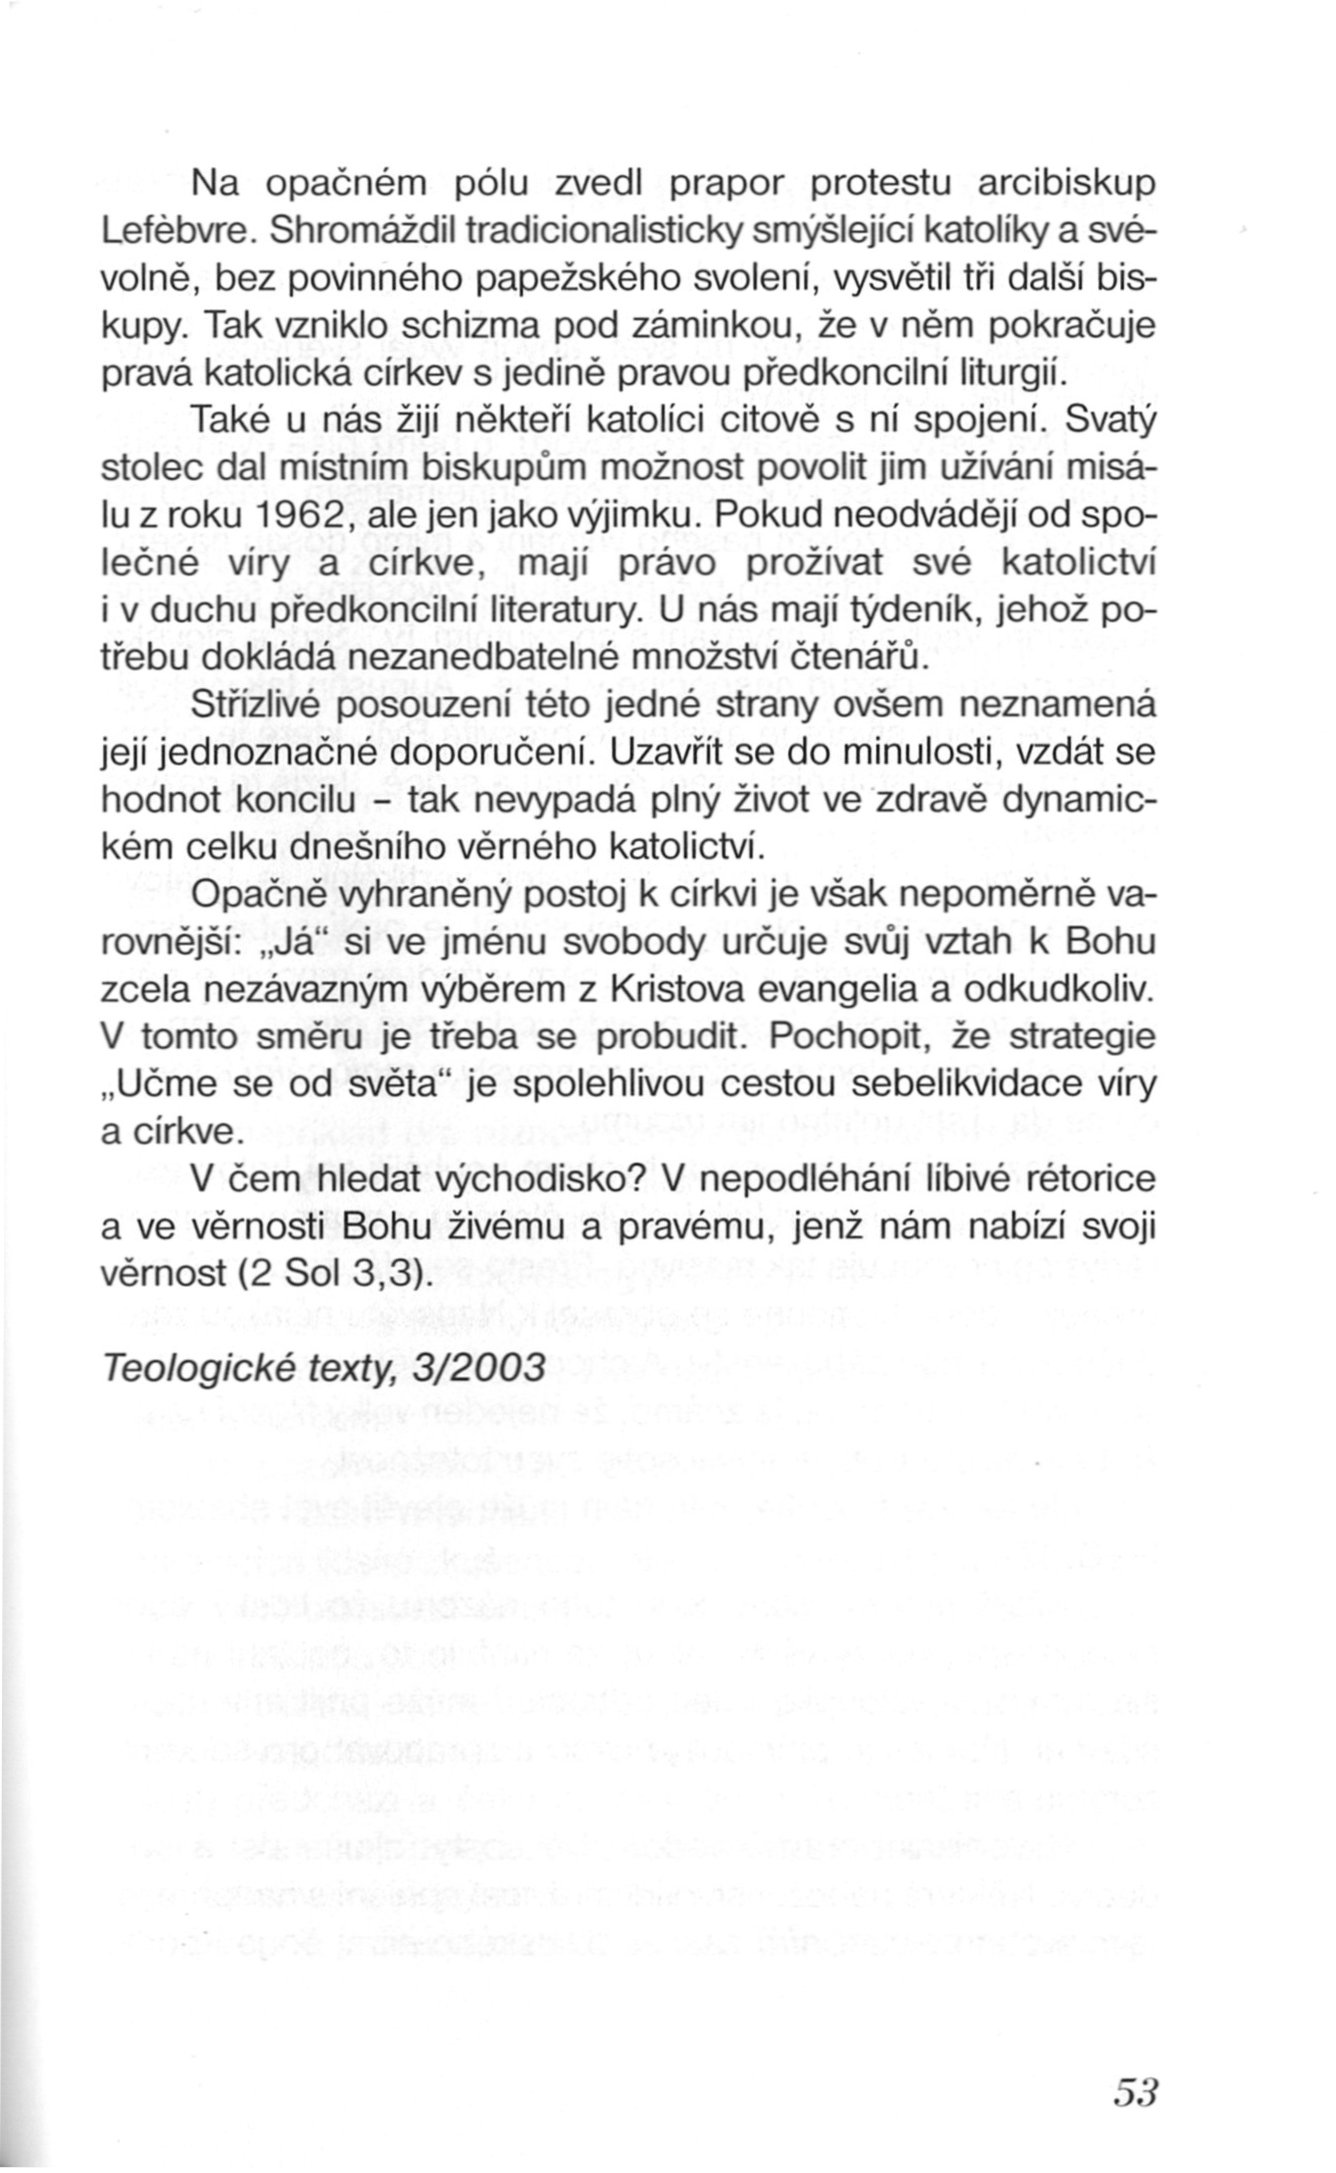 K jádru věci / Věrnost / strana 53